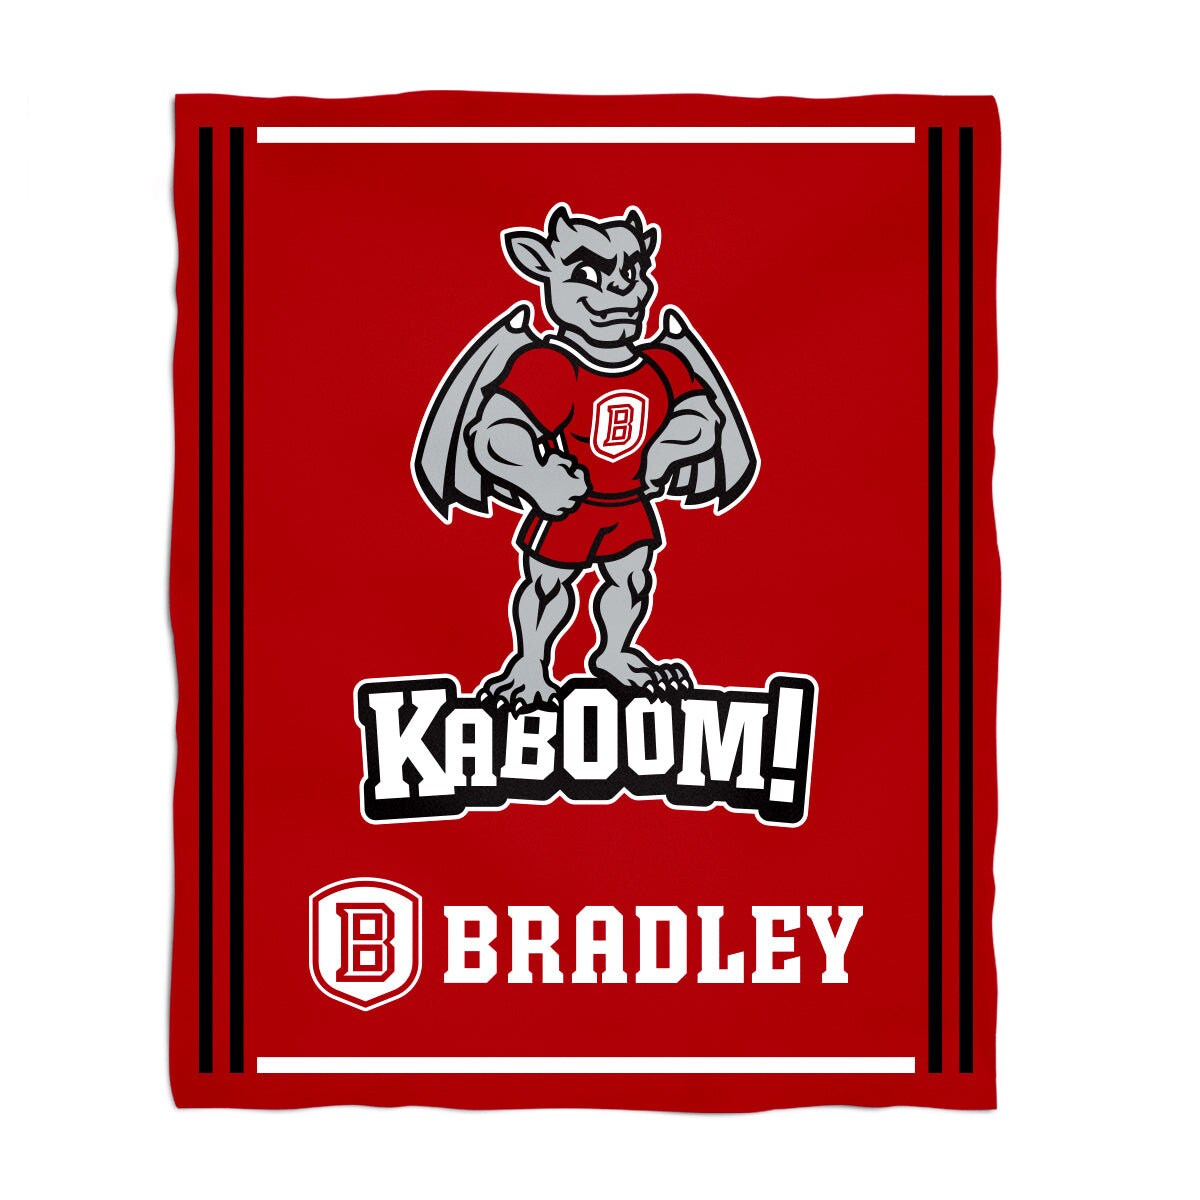  Bradley Braves Team Mascot Garden Flag : Sports & Outdoors